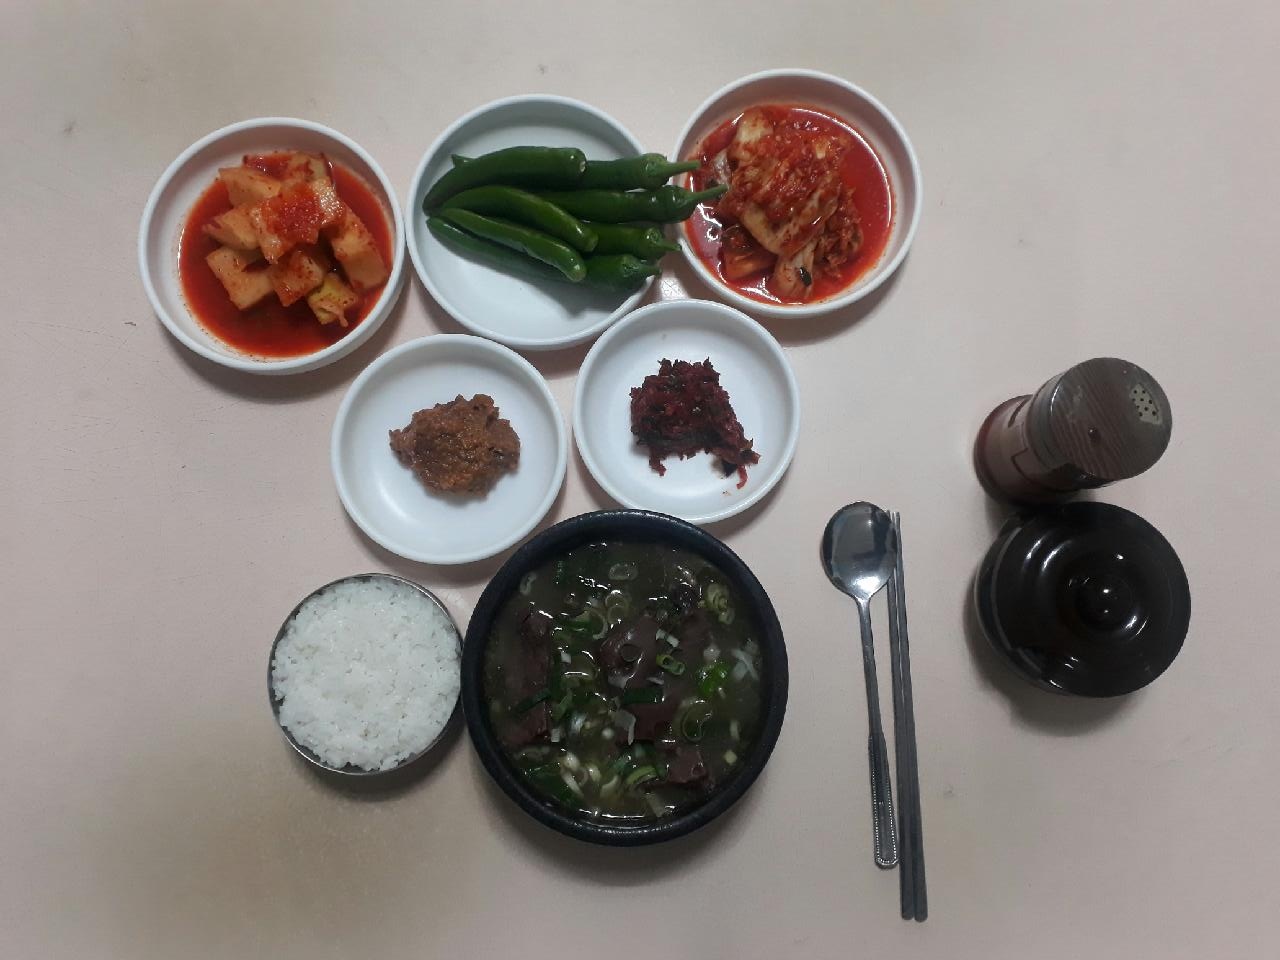 출처 : 복서울식당 공식 점주 제공